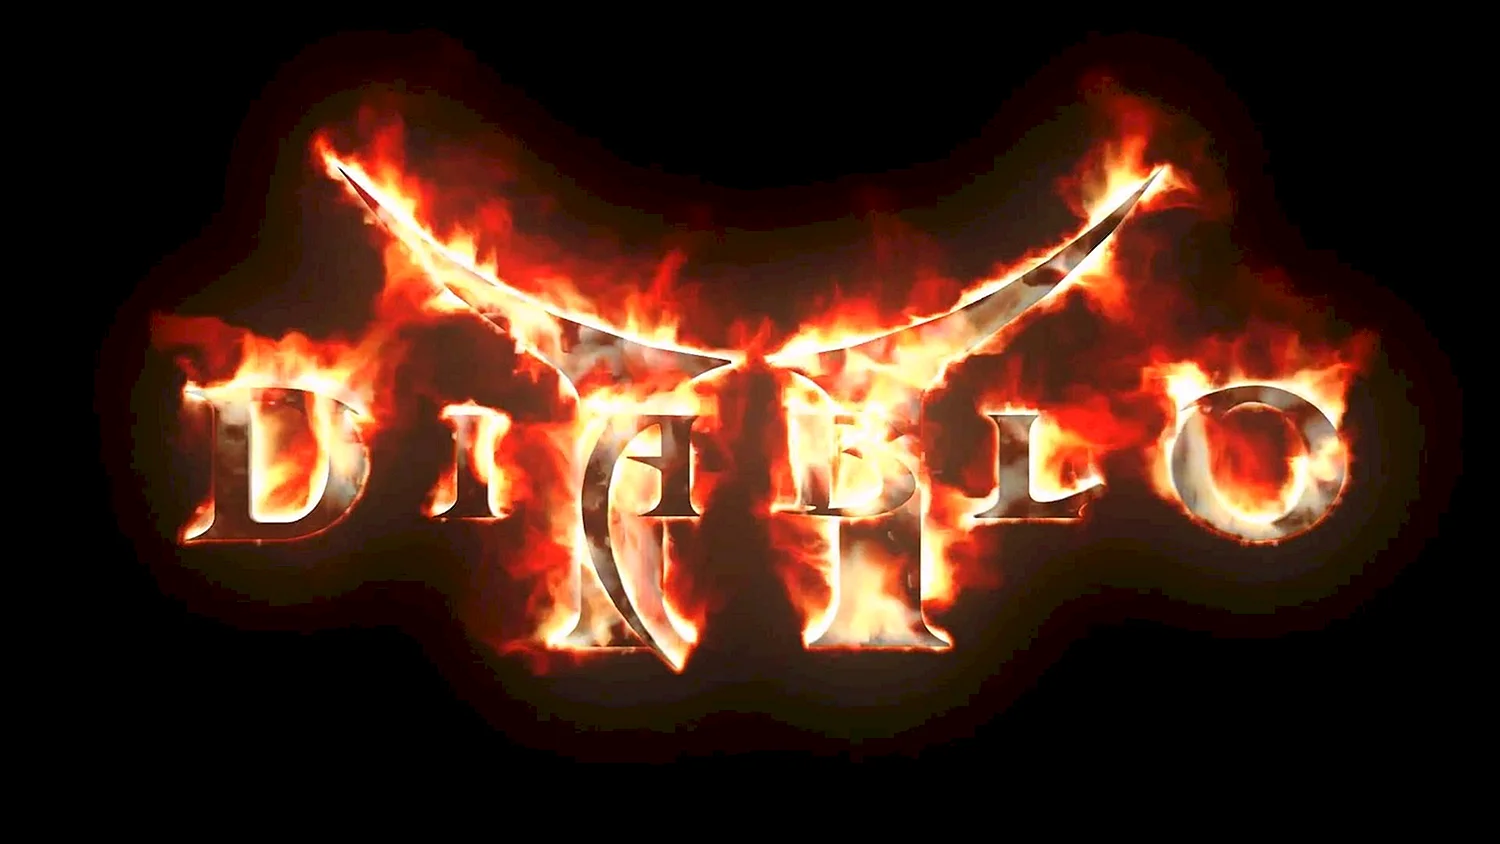 Diablo 2 logo